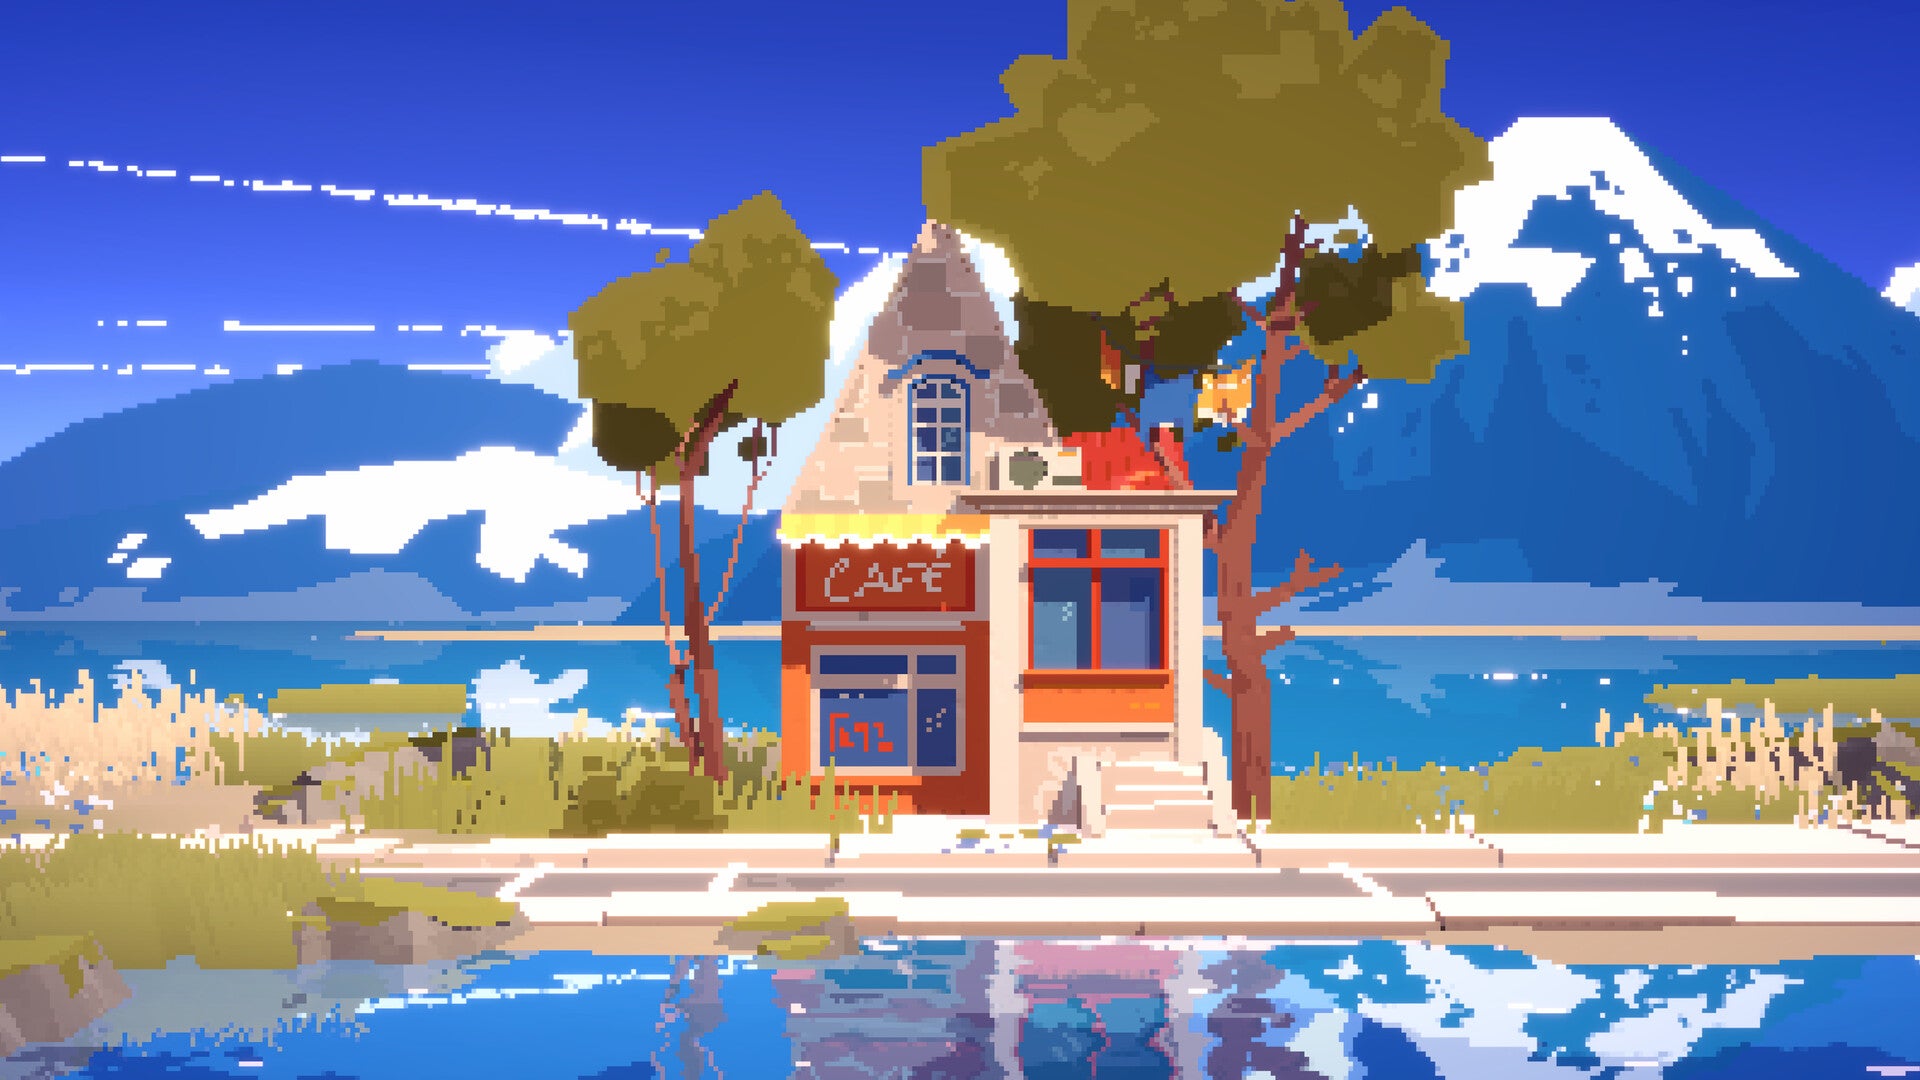 Une carte postale de pixel art montrant un petit café-maison coloré avec de grands arbres à côté, un lac devant et des montagnes imposantes derrière. On peut presque respirer l'air pur de la montagne d'ici.